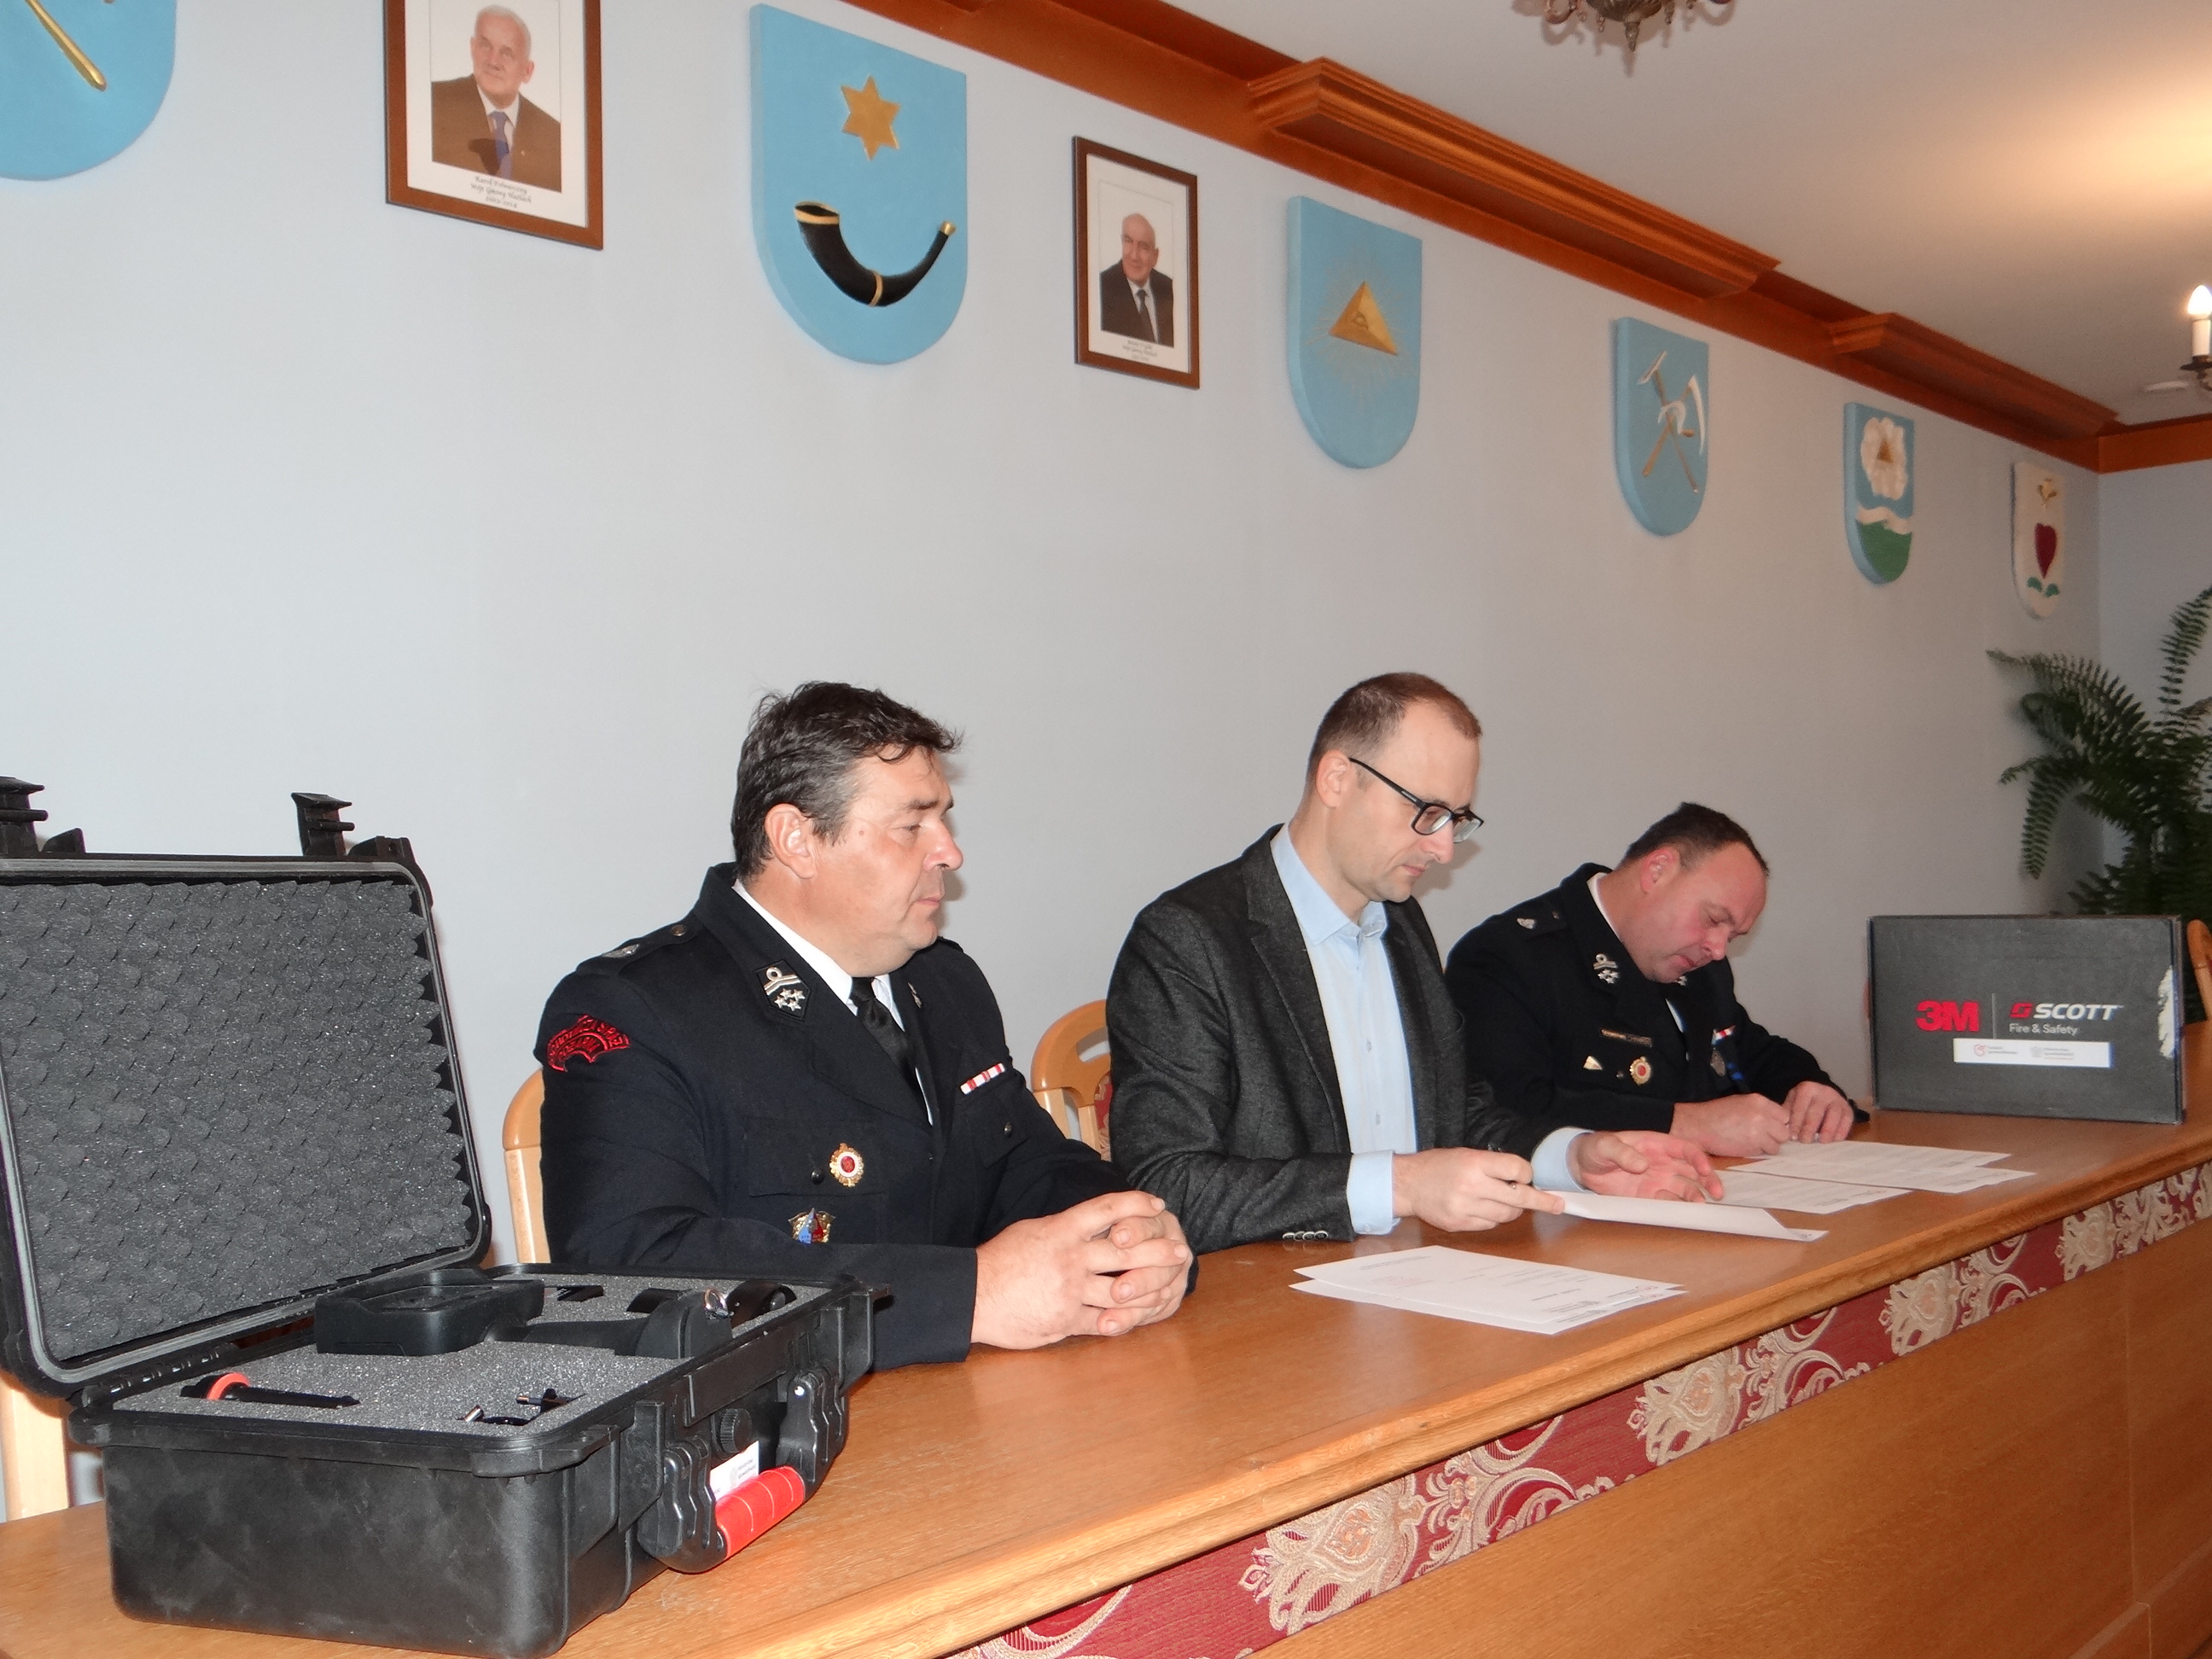 Podpisanie umowy darowizny pomiędzy Gminą Hażlach a Ochotniczą Strażą Pożarną w Hażlachu. Trzy osoby, w tym dwóch strażaków w mundurach, podpisują dokumenty